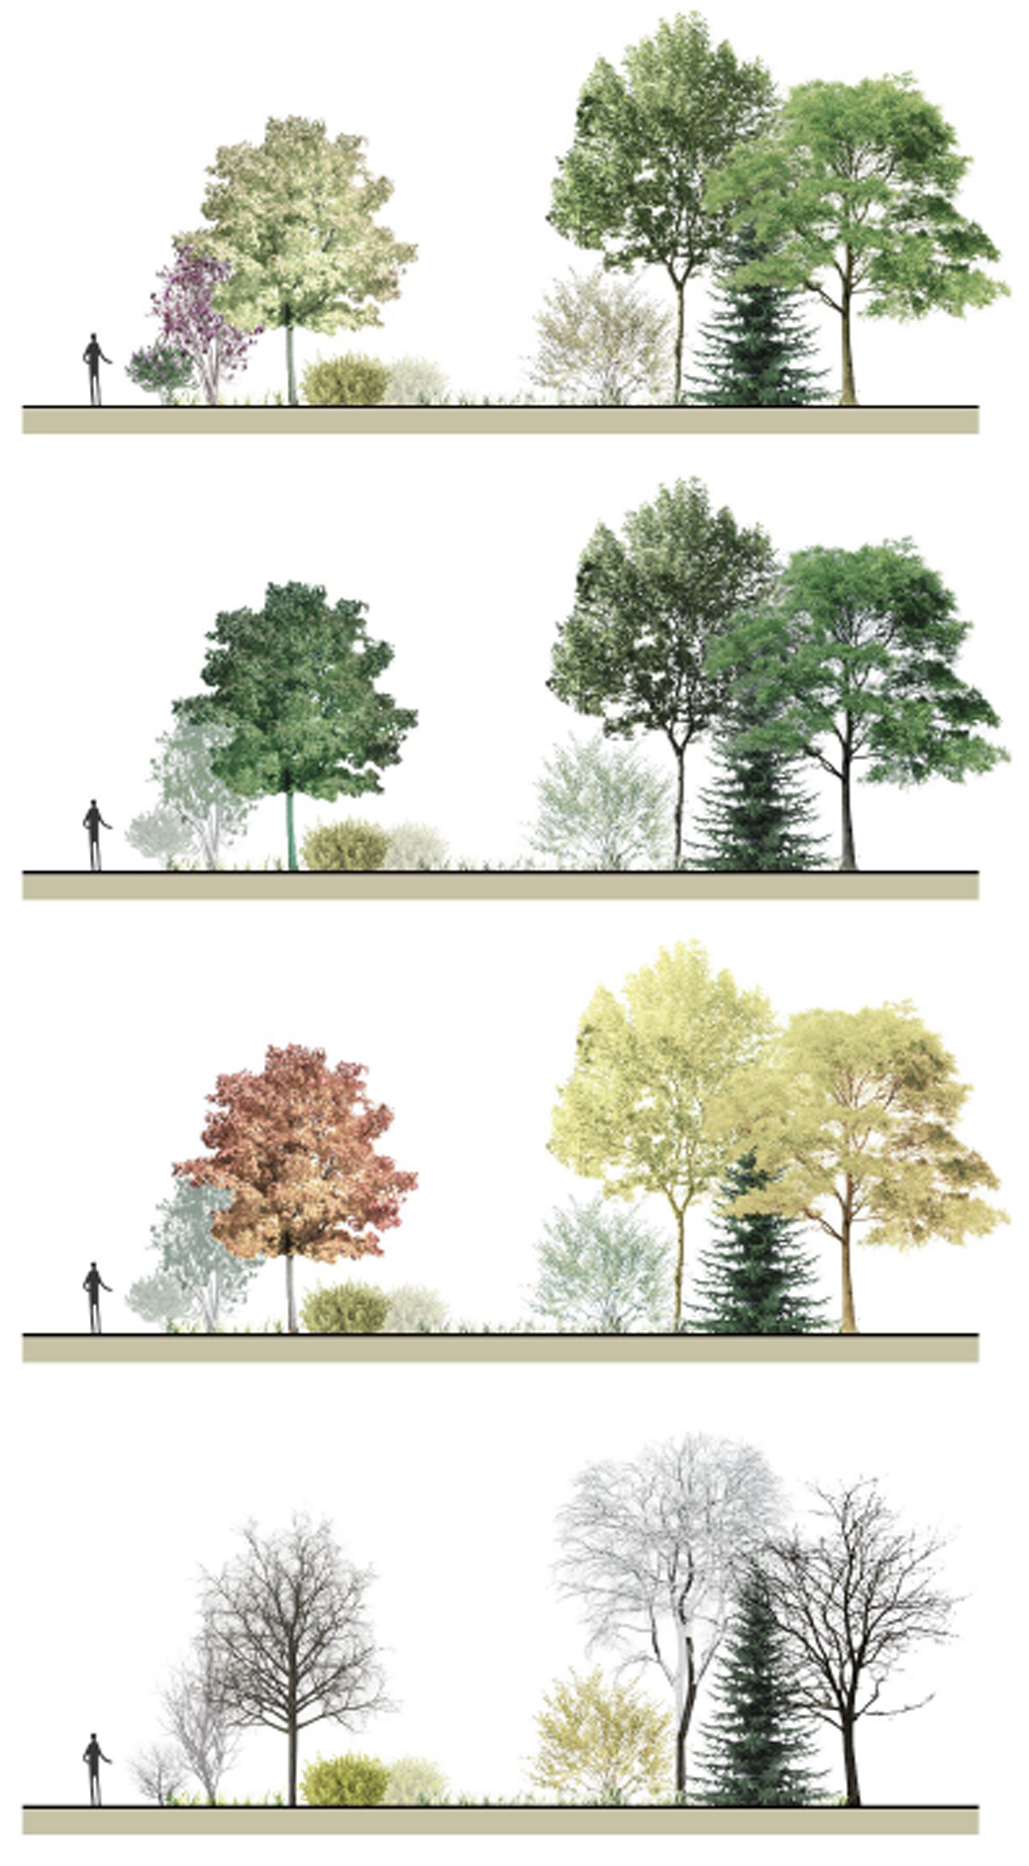 Les arbres, les arbustes et les fleurs plantés dans les cours Sussex, telles qu’imaginées par Yuan Li, Siqing Hu et Yuxin Ti.